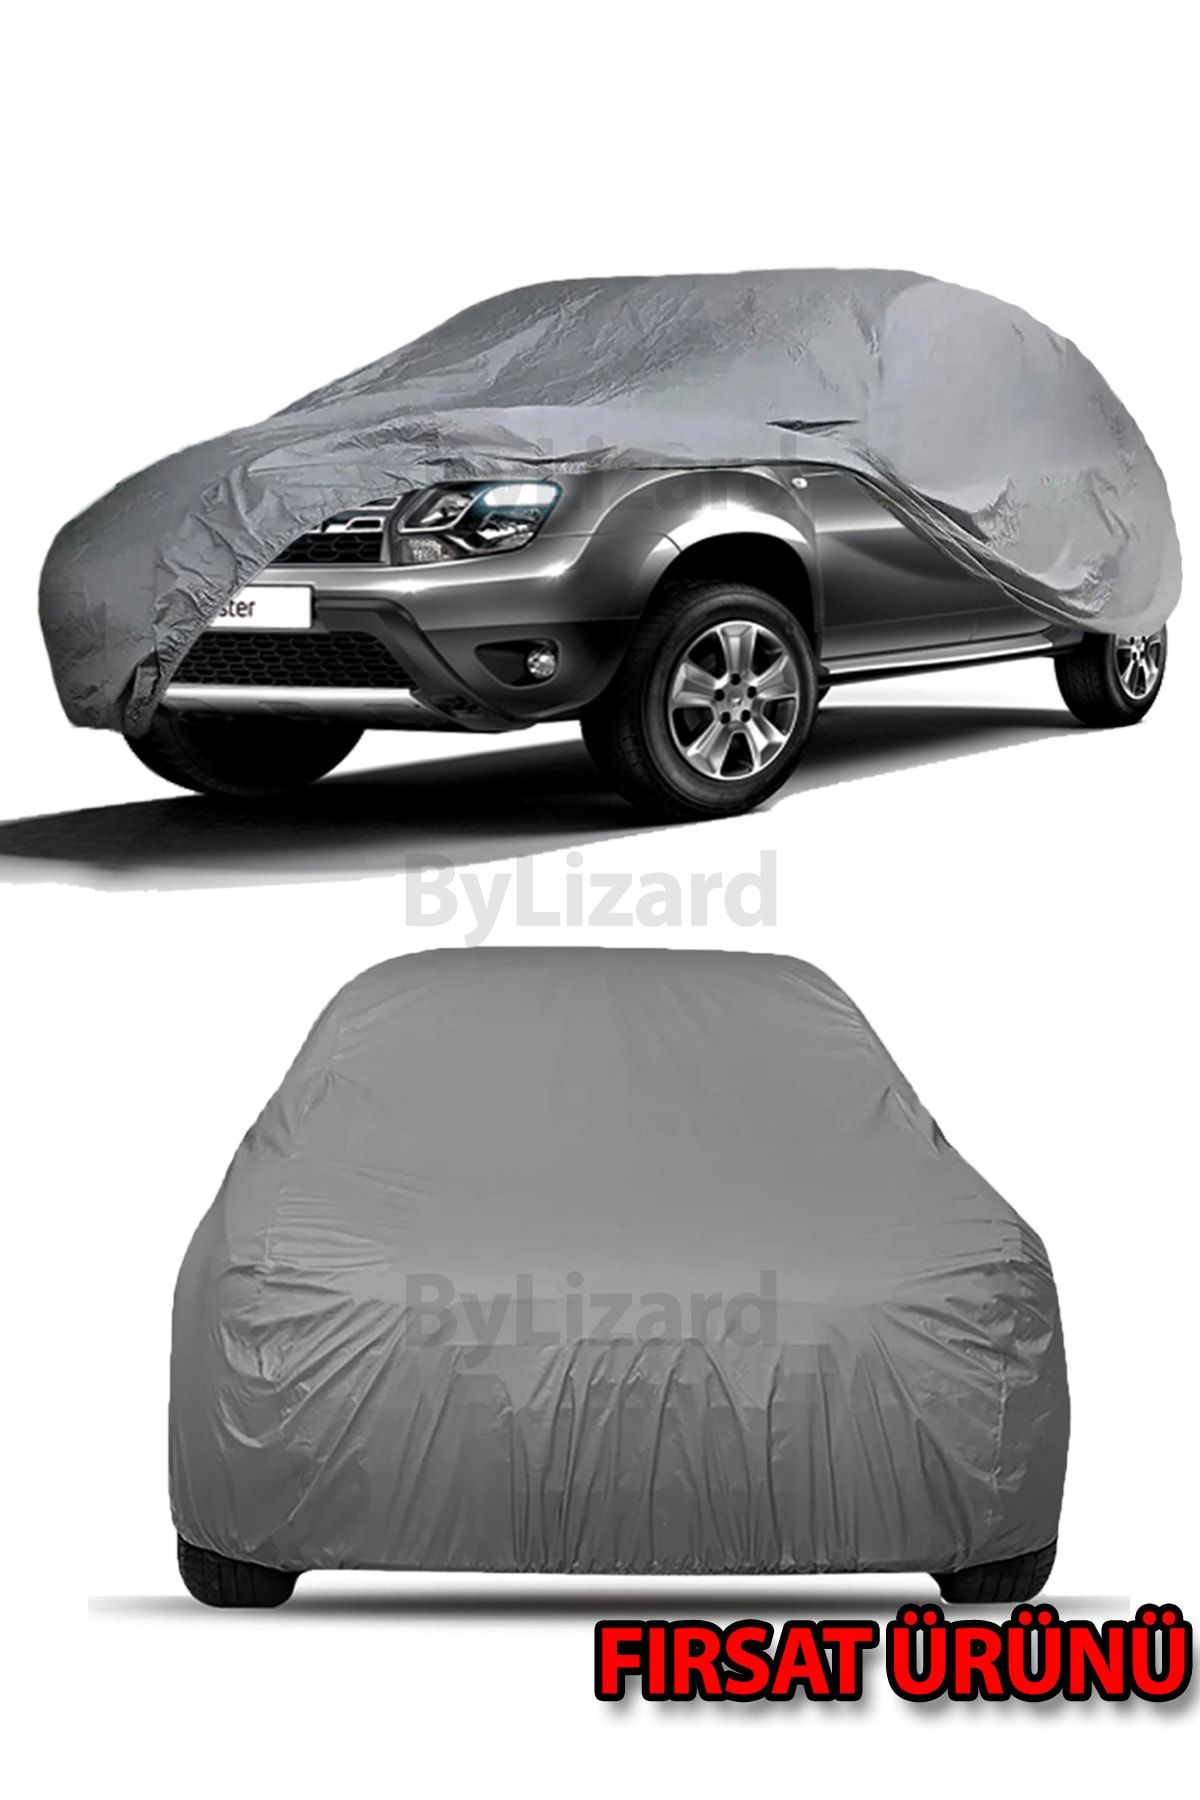 ByLizard Dacia Duster Uyumlu Lüks Kalite Oto Araba Brandası - Örtüsü